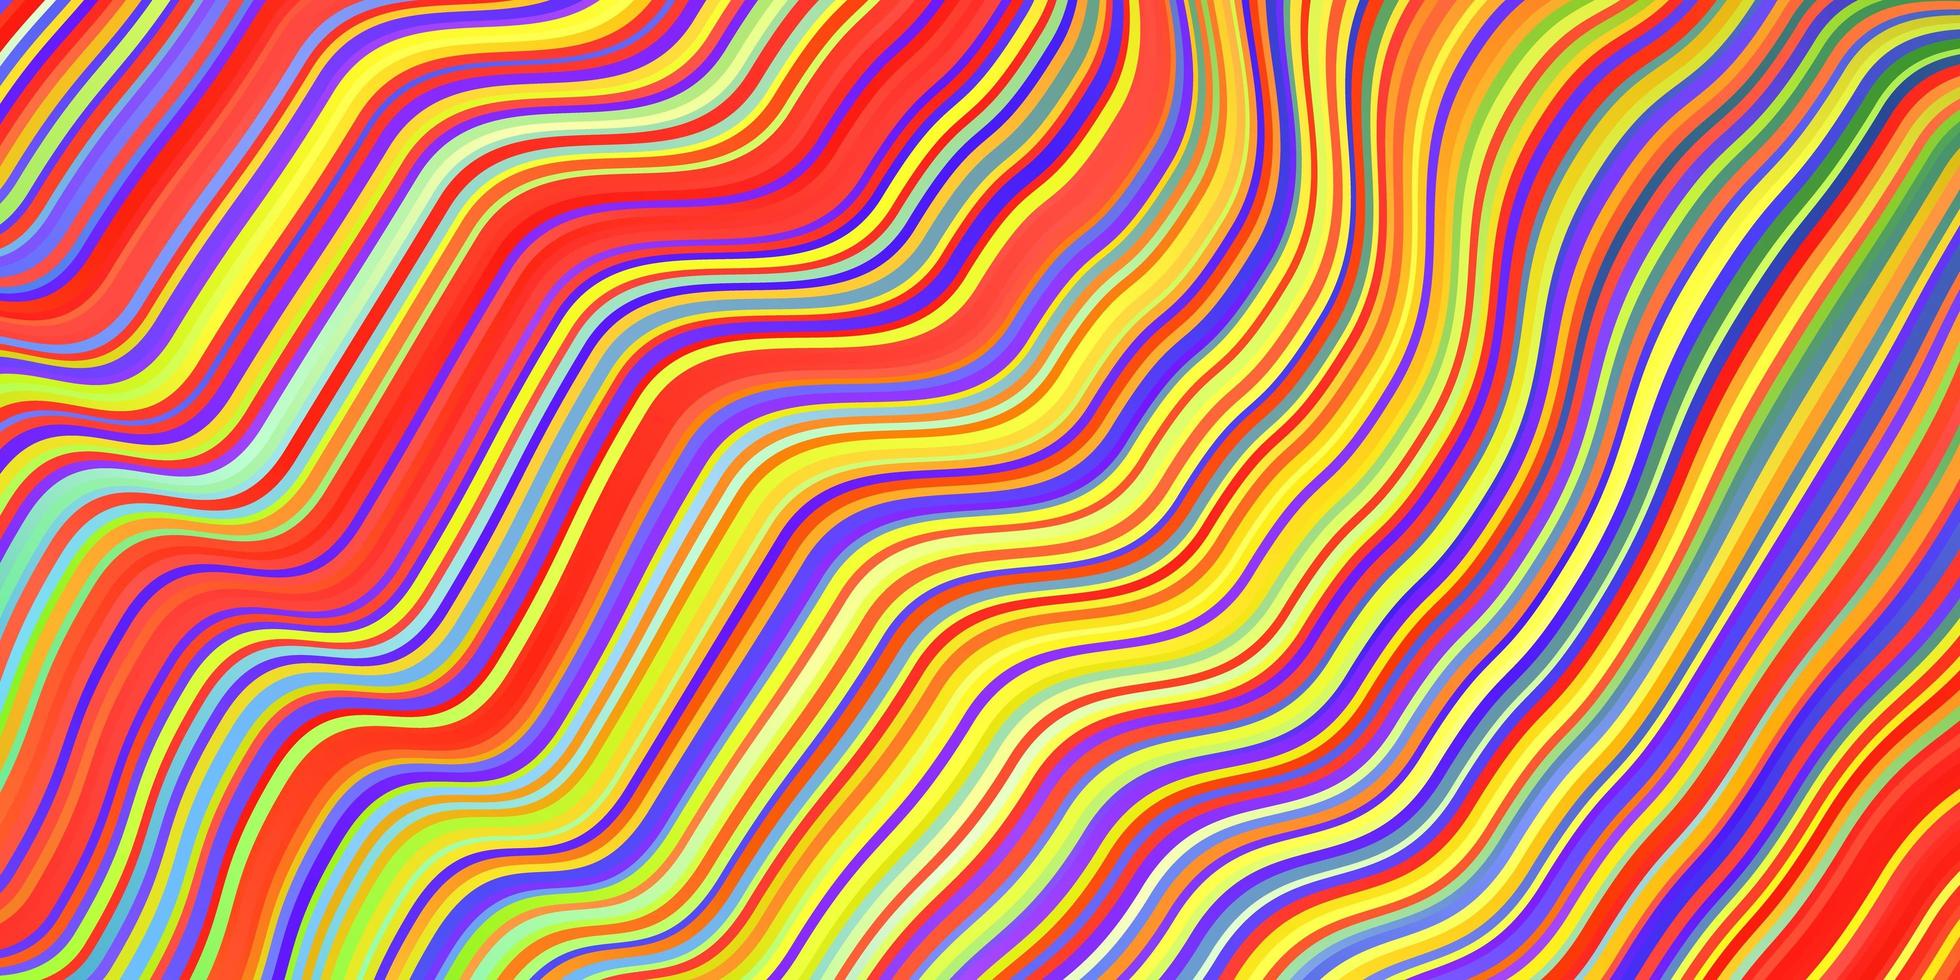 trama vettoriale multicolore leggera con curve.